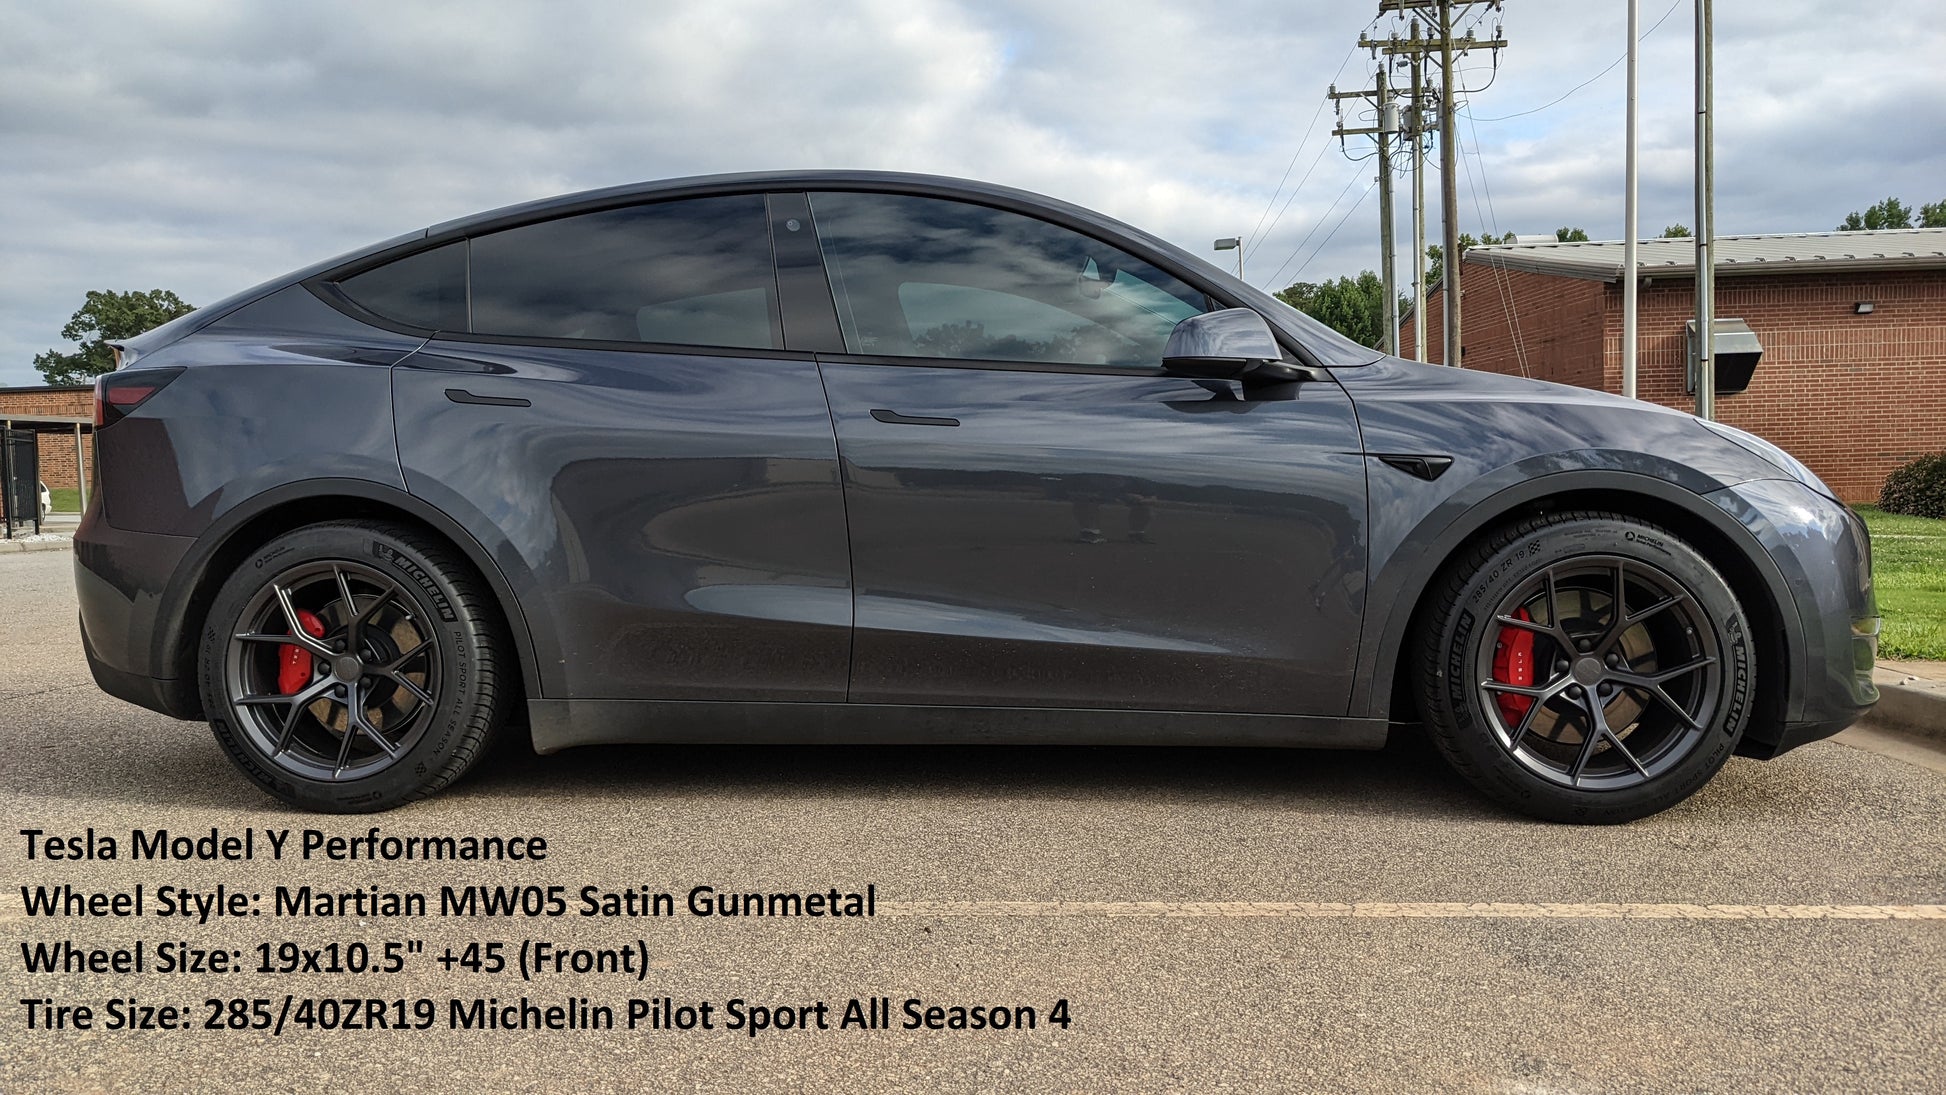 Tesla Model Y Performance Wheel Style: Martian MW05 Satin Gunmetal Wheel Size: 19x10.5"+45 (Front) Tire Size: 285/40ZR19 Michelin Sport All Season 4